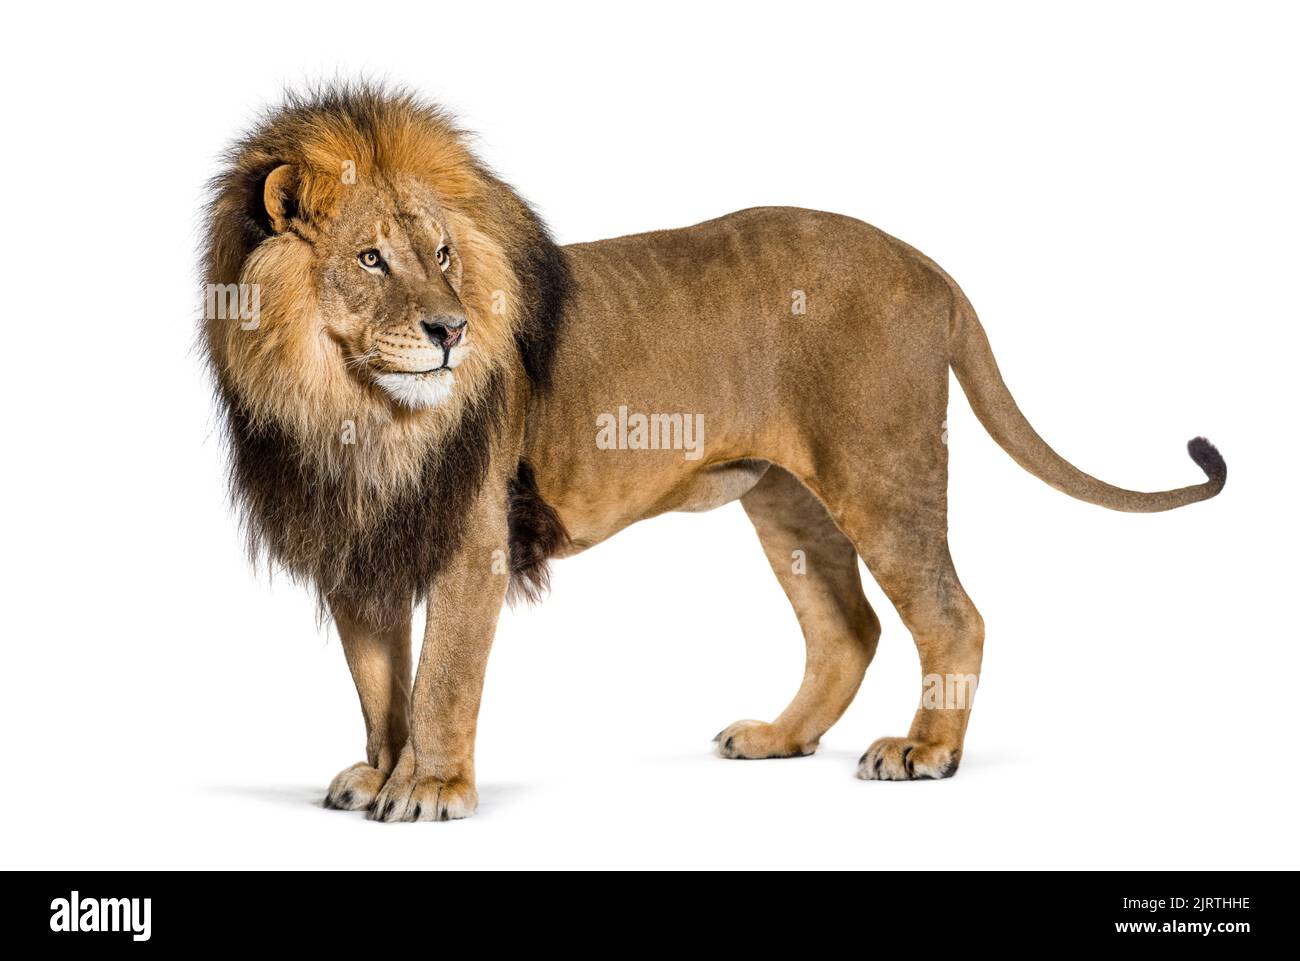 Vue latérale d'un lion adulte masculin debout et regardant vers l'arrière tirant un visage drôle, isolé sur blanc Banque D'Images